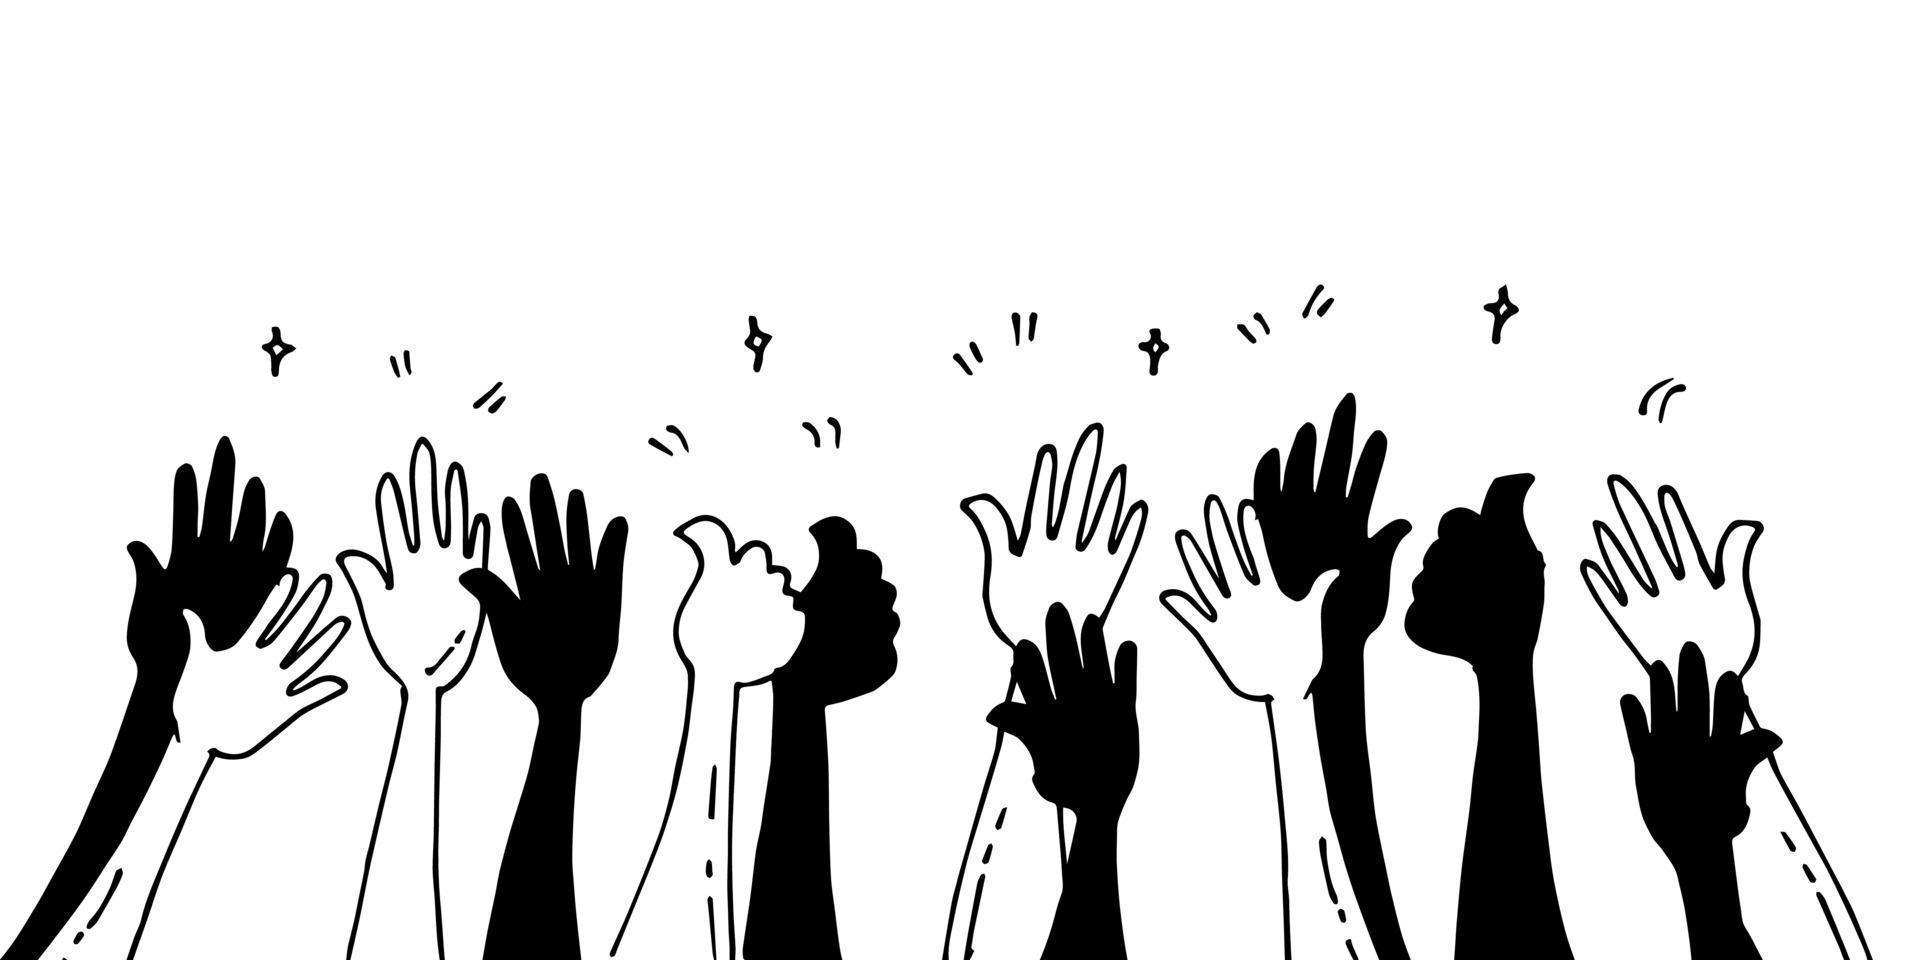 doodle av händer upp, händerna klappar. applåder gester. grattis företag. vektor illustration